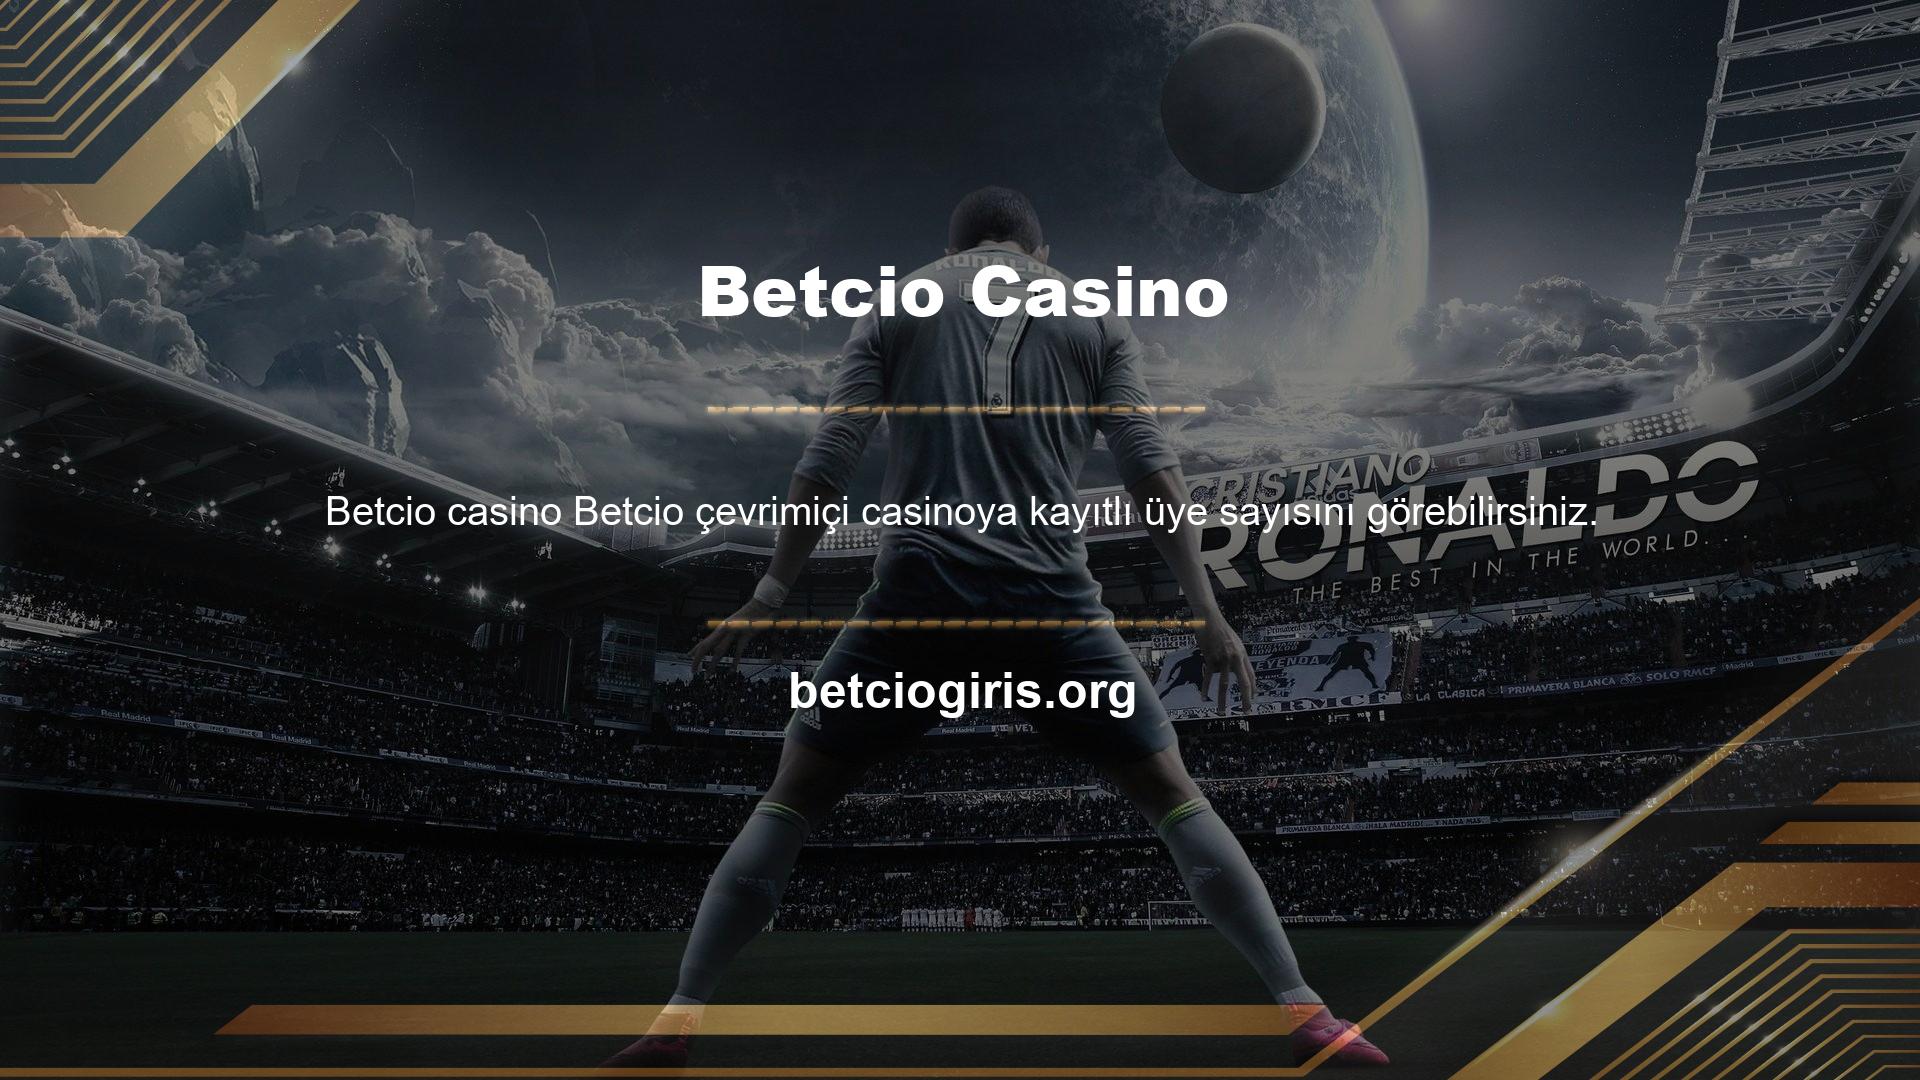 Betcio web sitesi, kurulduğu günden bu yana Türkiye'de casino sektörünün en popüler platformlarından biri olmuştur ve bugün birçok bahisçinin ilgisini çekmeye devam etmektedir